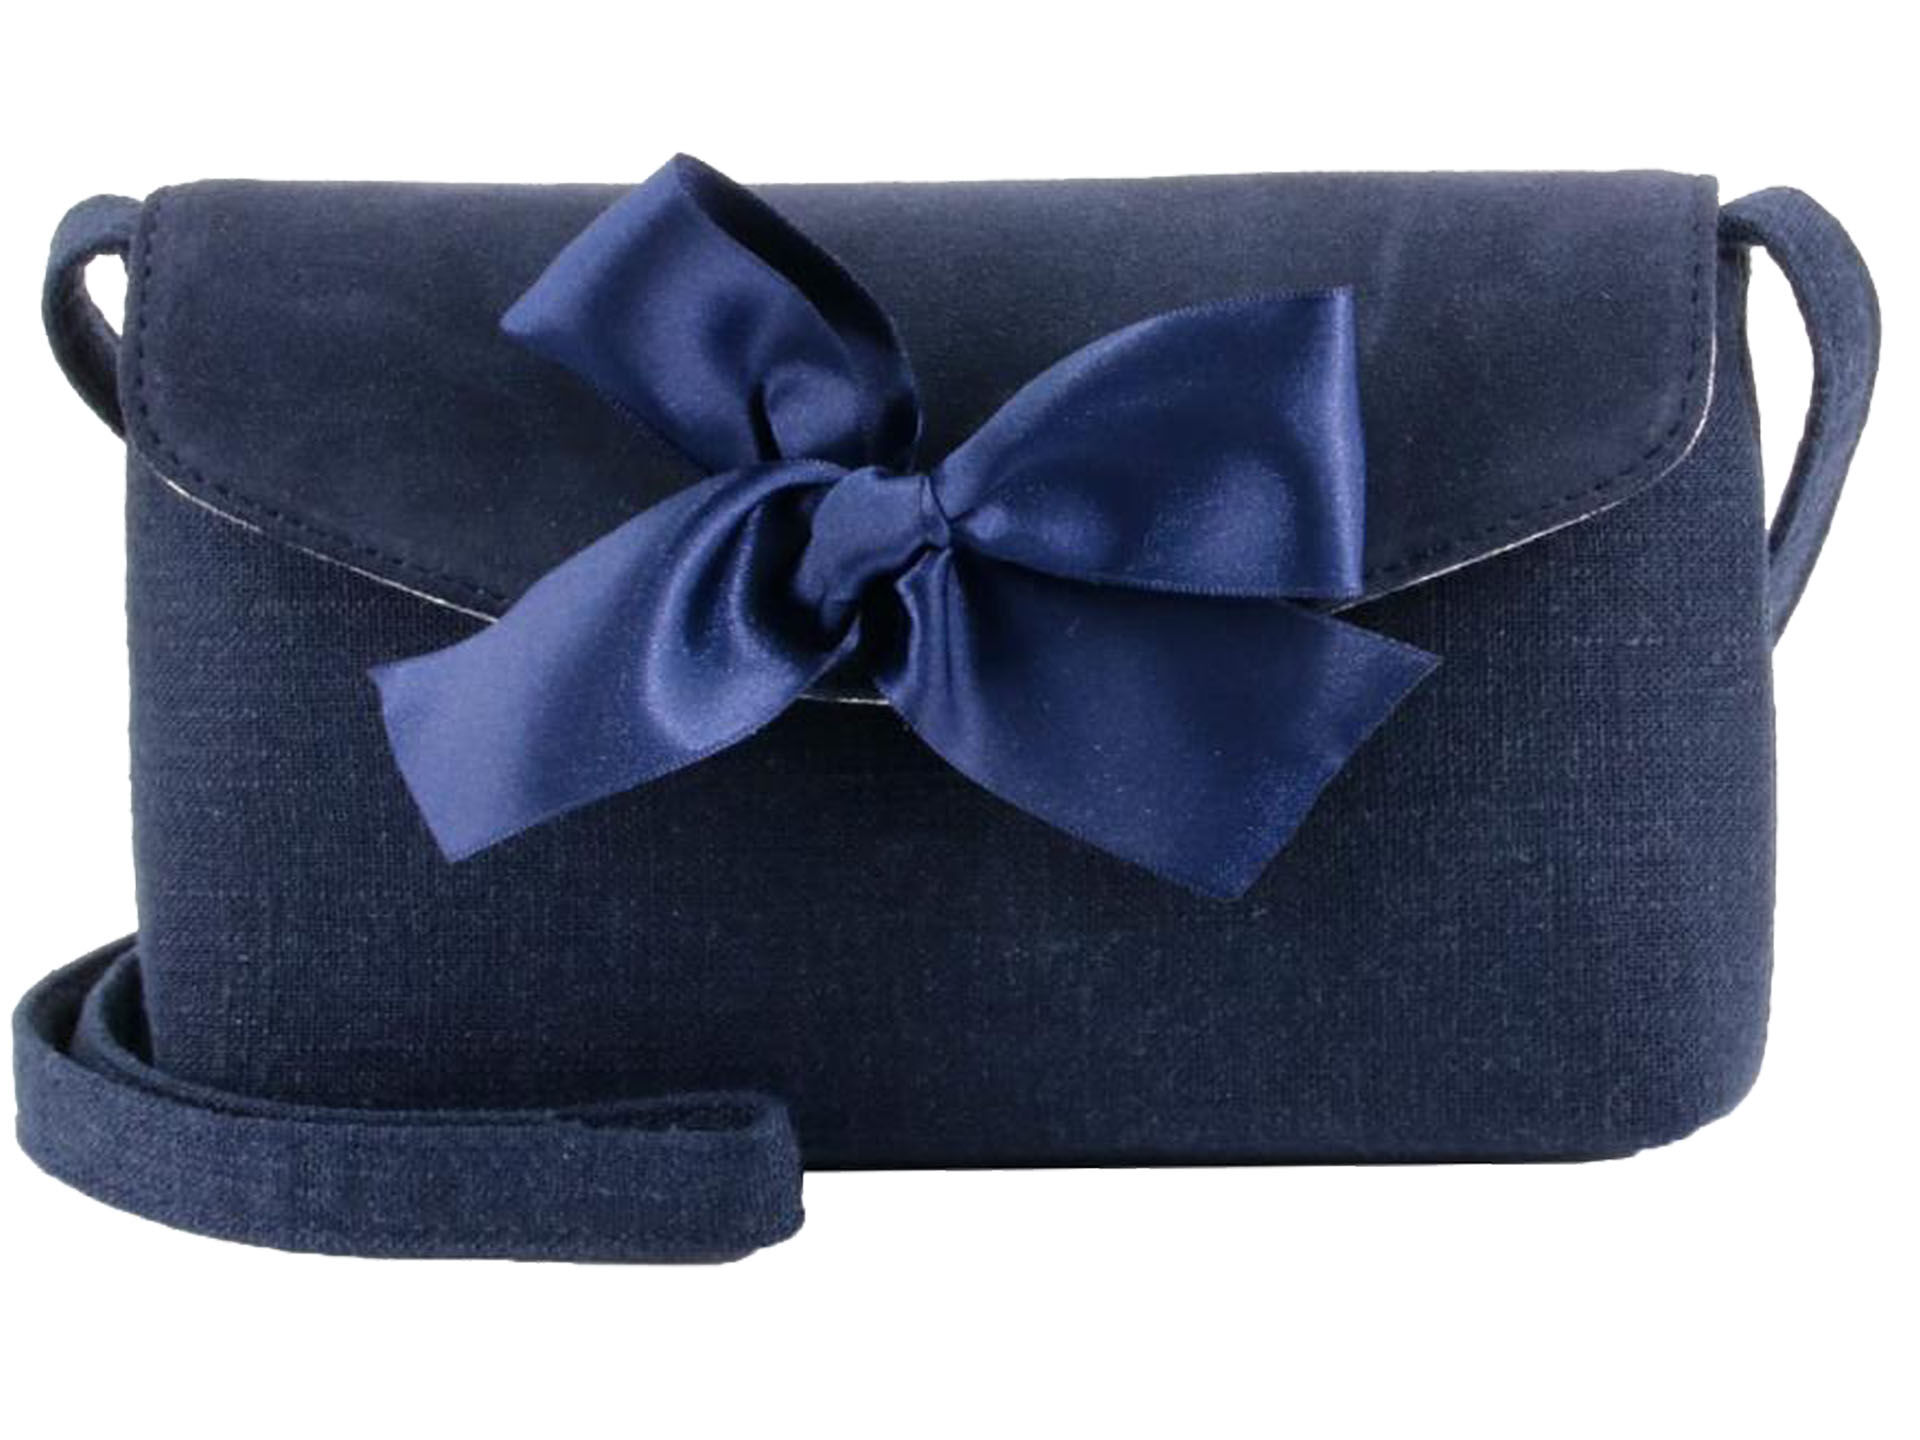 Trachtentasche Dirndltasche mit Schleife Marineblau